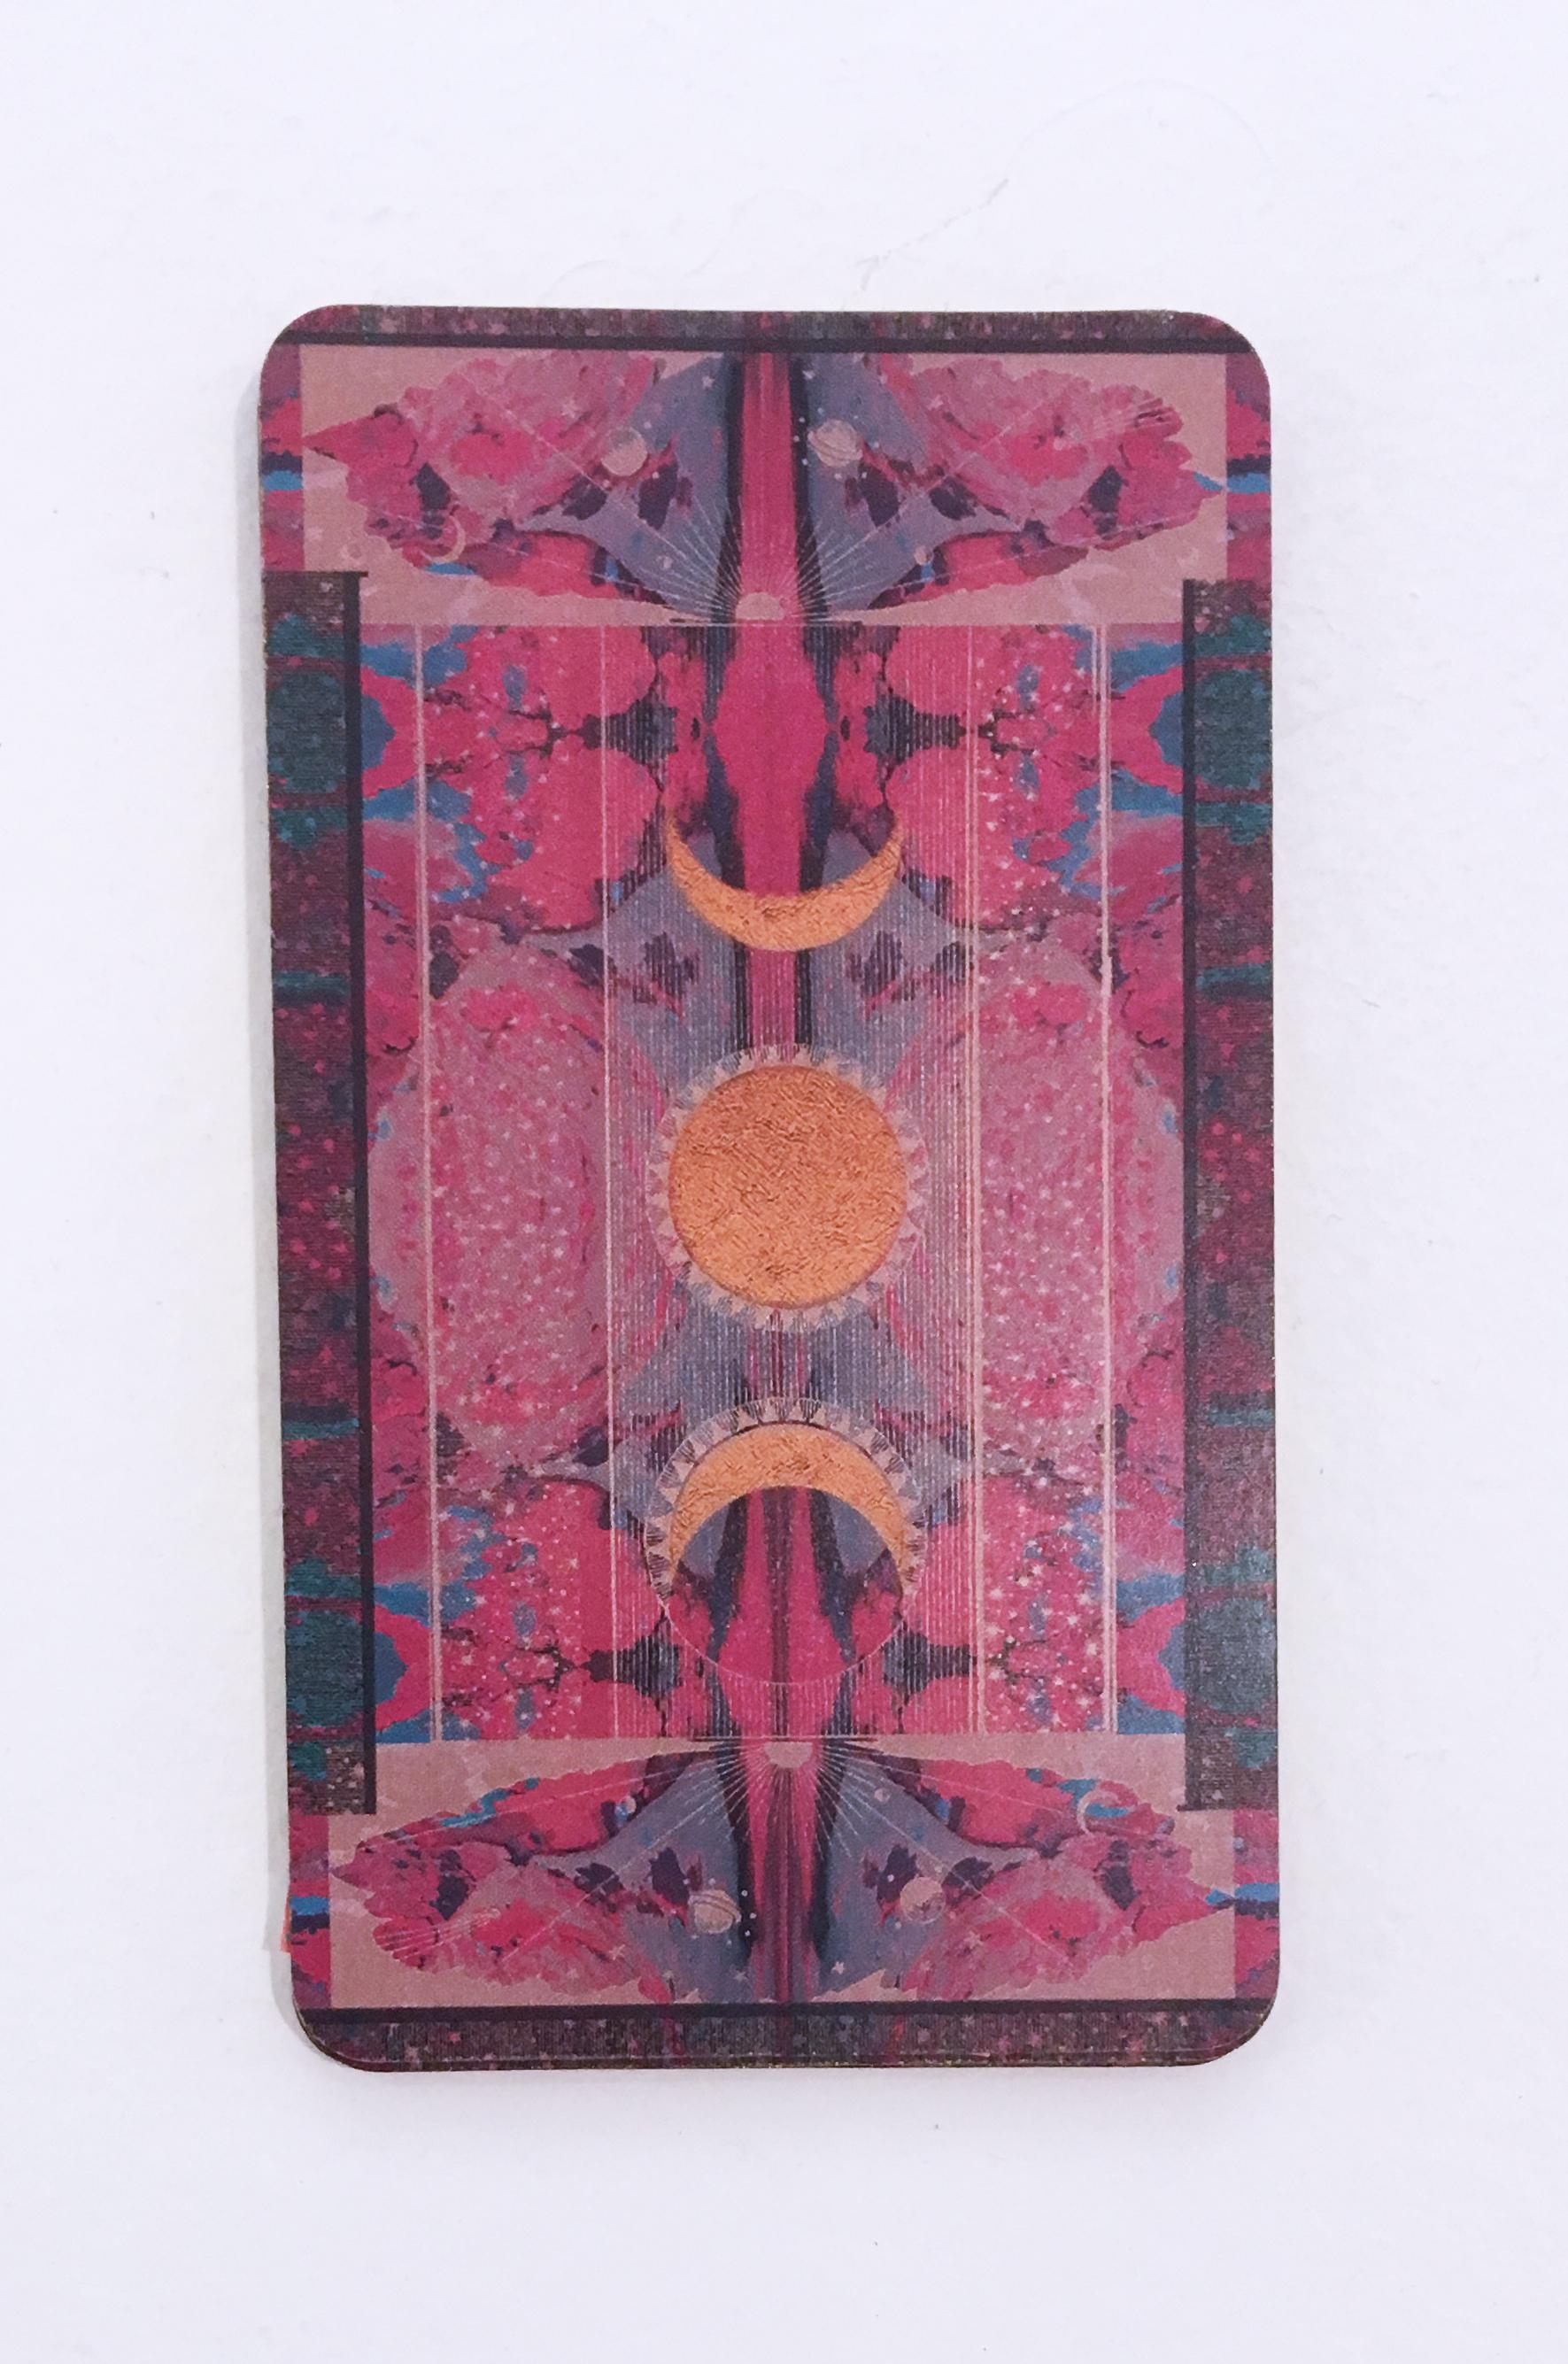 Wassermann, 2018, Collage, Druck, figurativ, Gold, Tarot, Horoskop, metallischer Goldrand, auf glänzendem, schwerem Karton mit rosafarbenem Muster auf der Rückseite.
